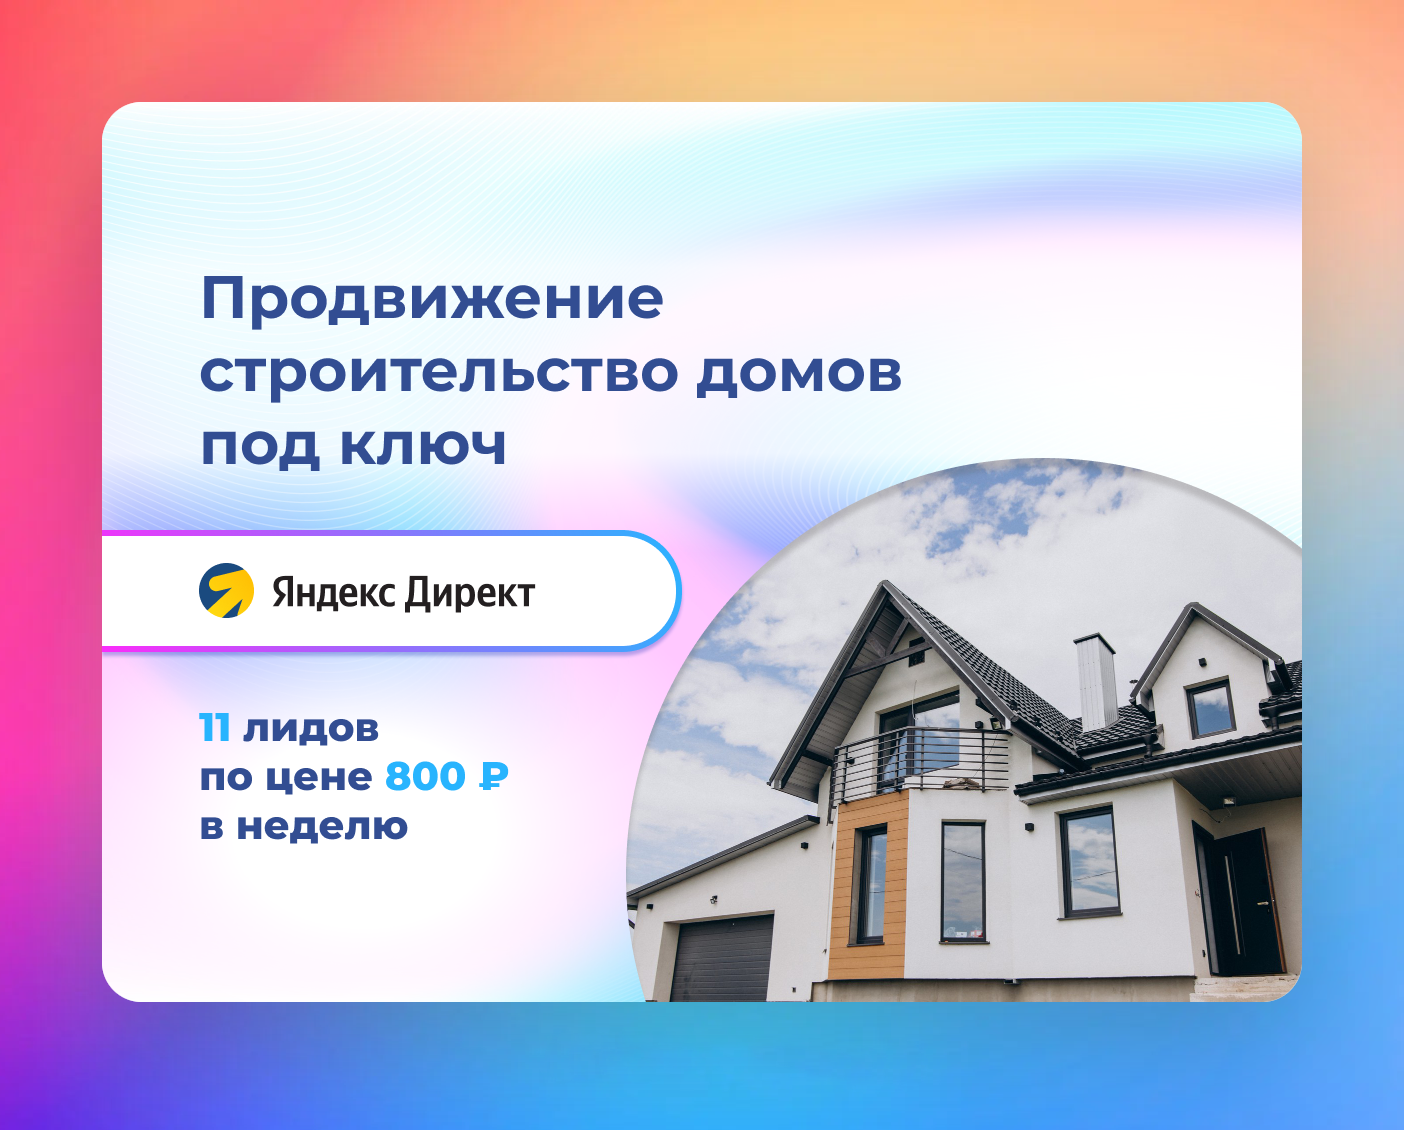 кейс реклама яндекс директ для компании по строительству домов